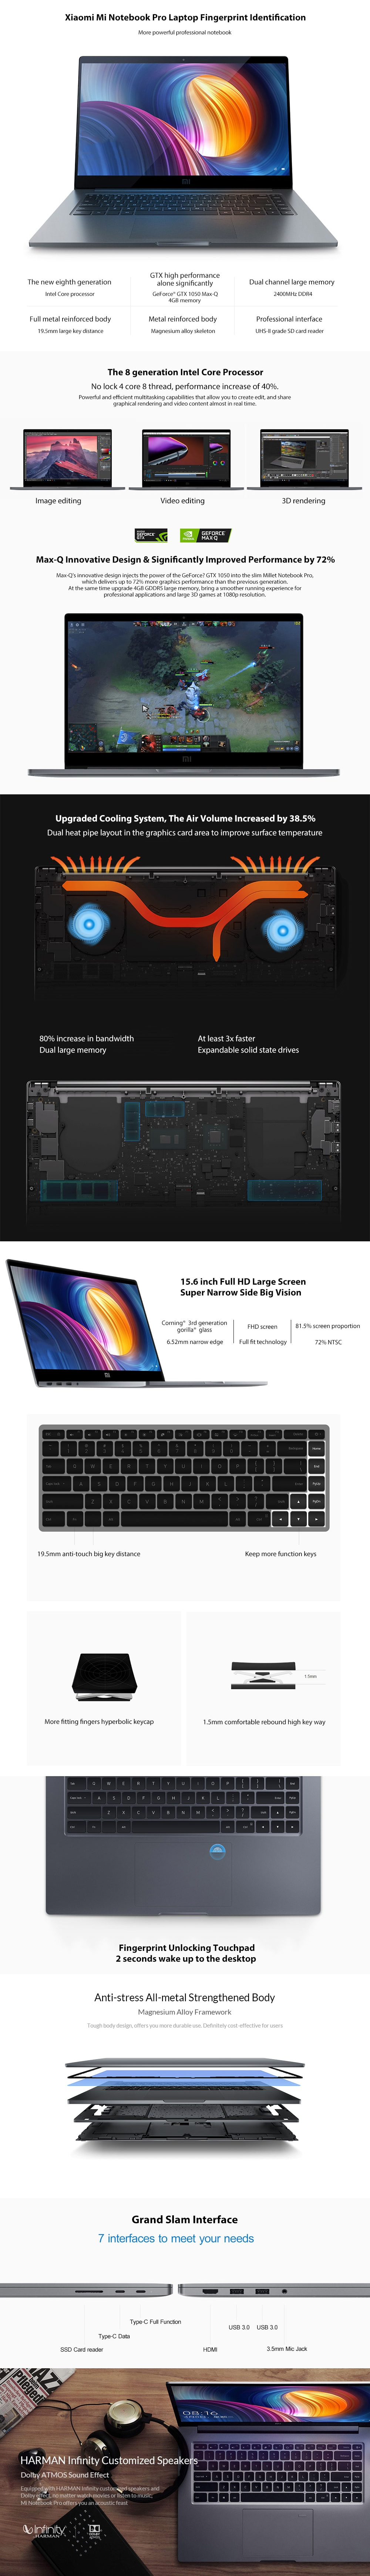 Xiaomi Mi Notebook Pro 15.6 inch i5-8250U 8GB DDR4 256GB SSD GTX1050Max-Q 4GB GDDR5 Laptop